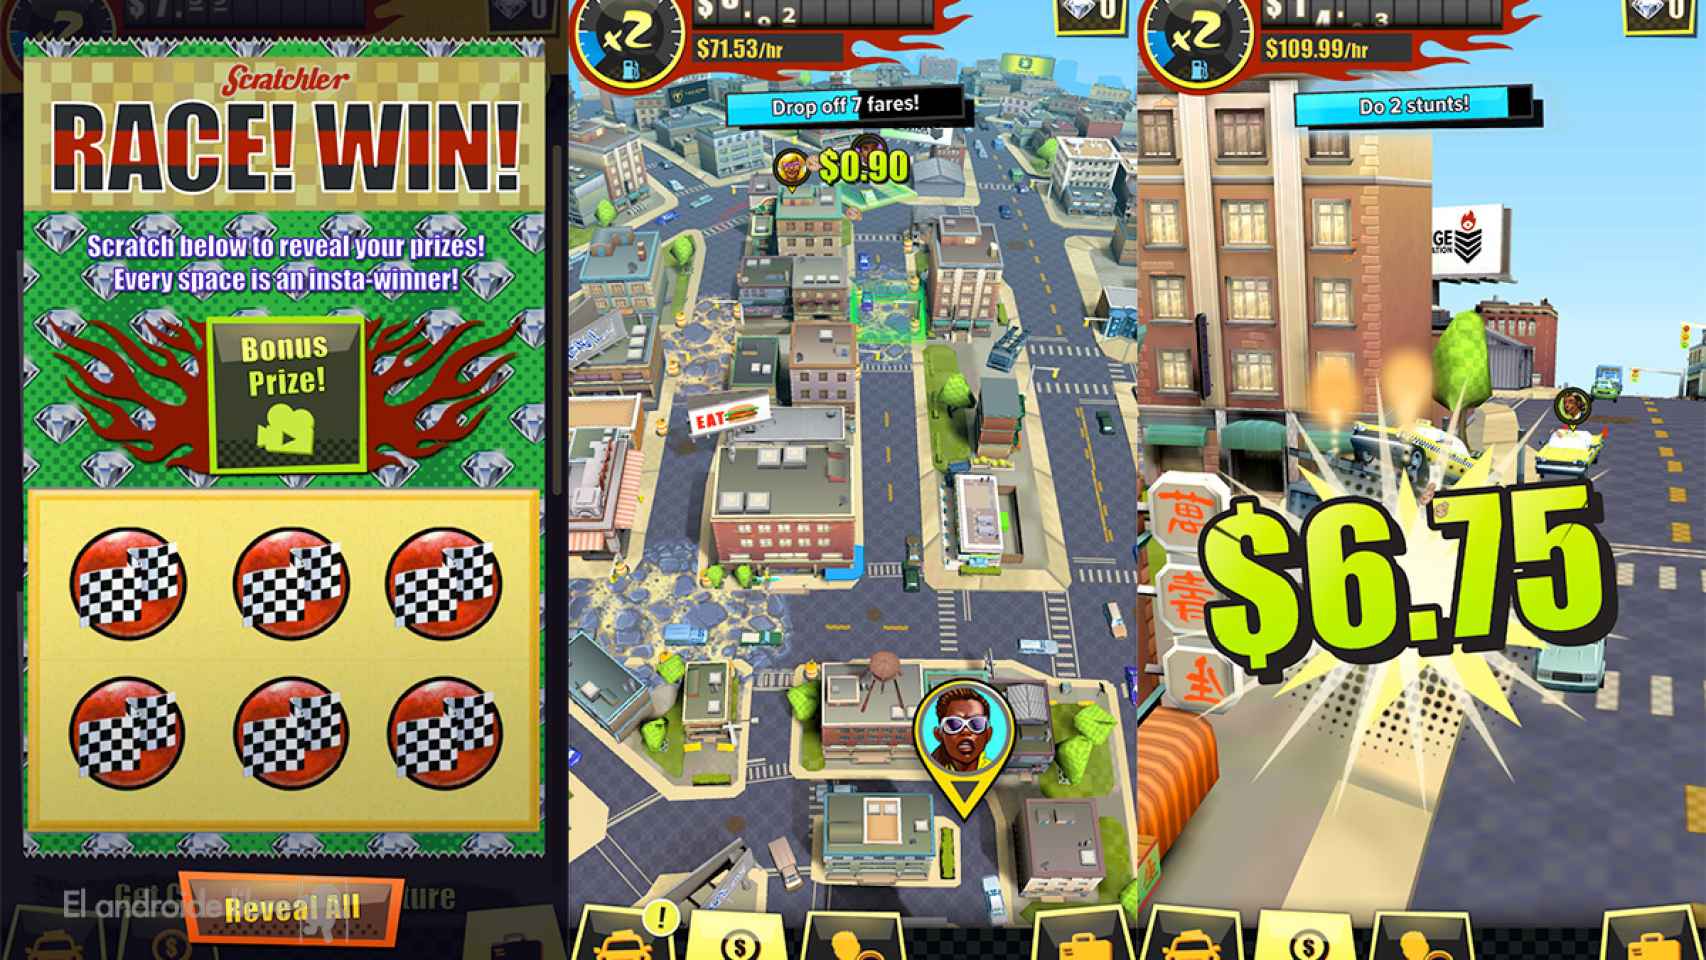 La locura hecha juego: descarga Crazy Taxi Gazillionaire para Android